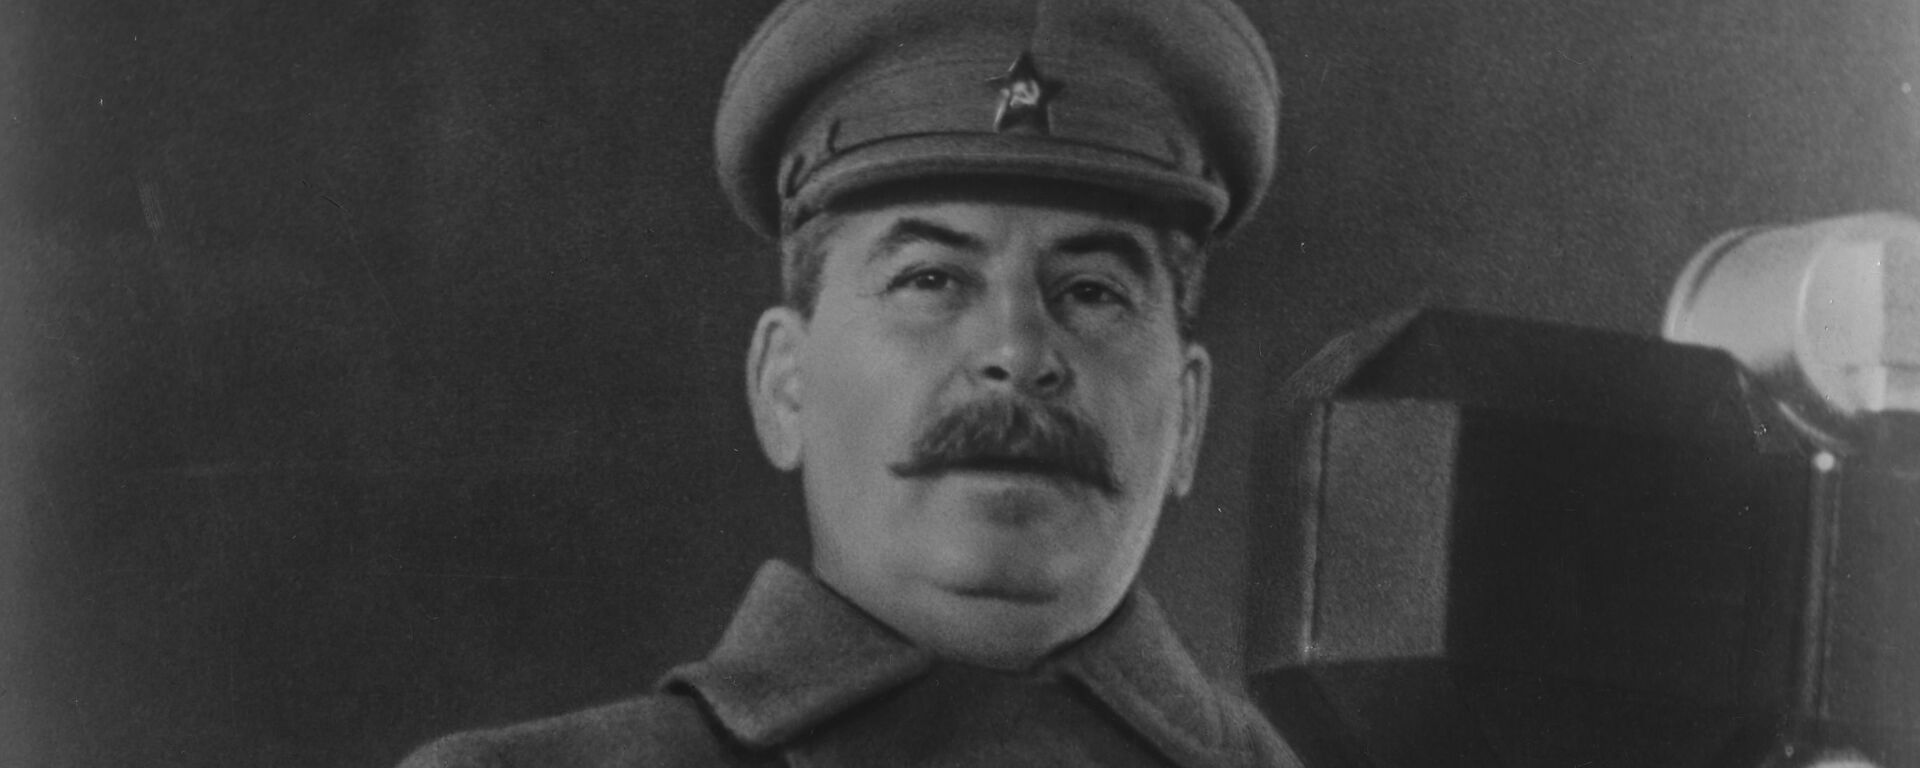 Iósif Stalin durante su discurso en el desfile del 7 de noviembre de 1941 - Sputnik Mundo, 1920, 07.11.2020